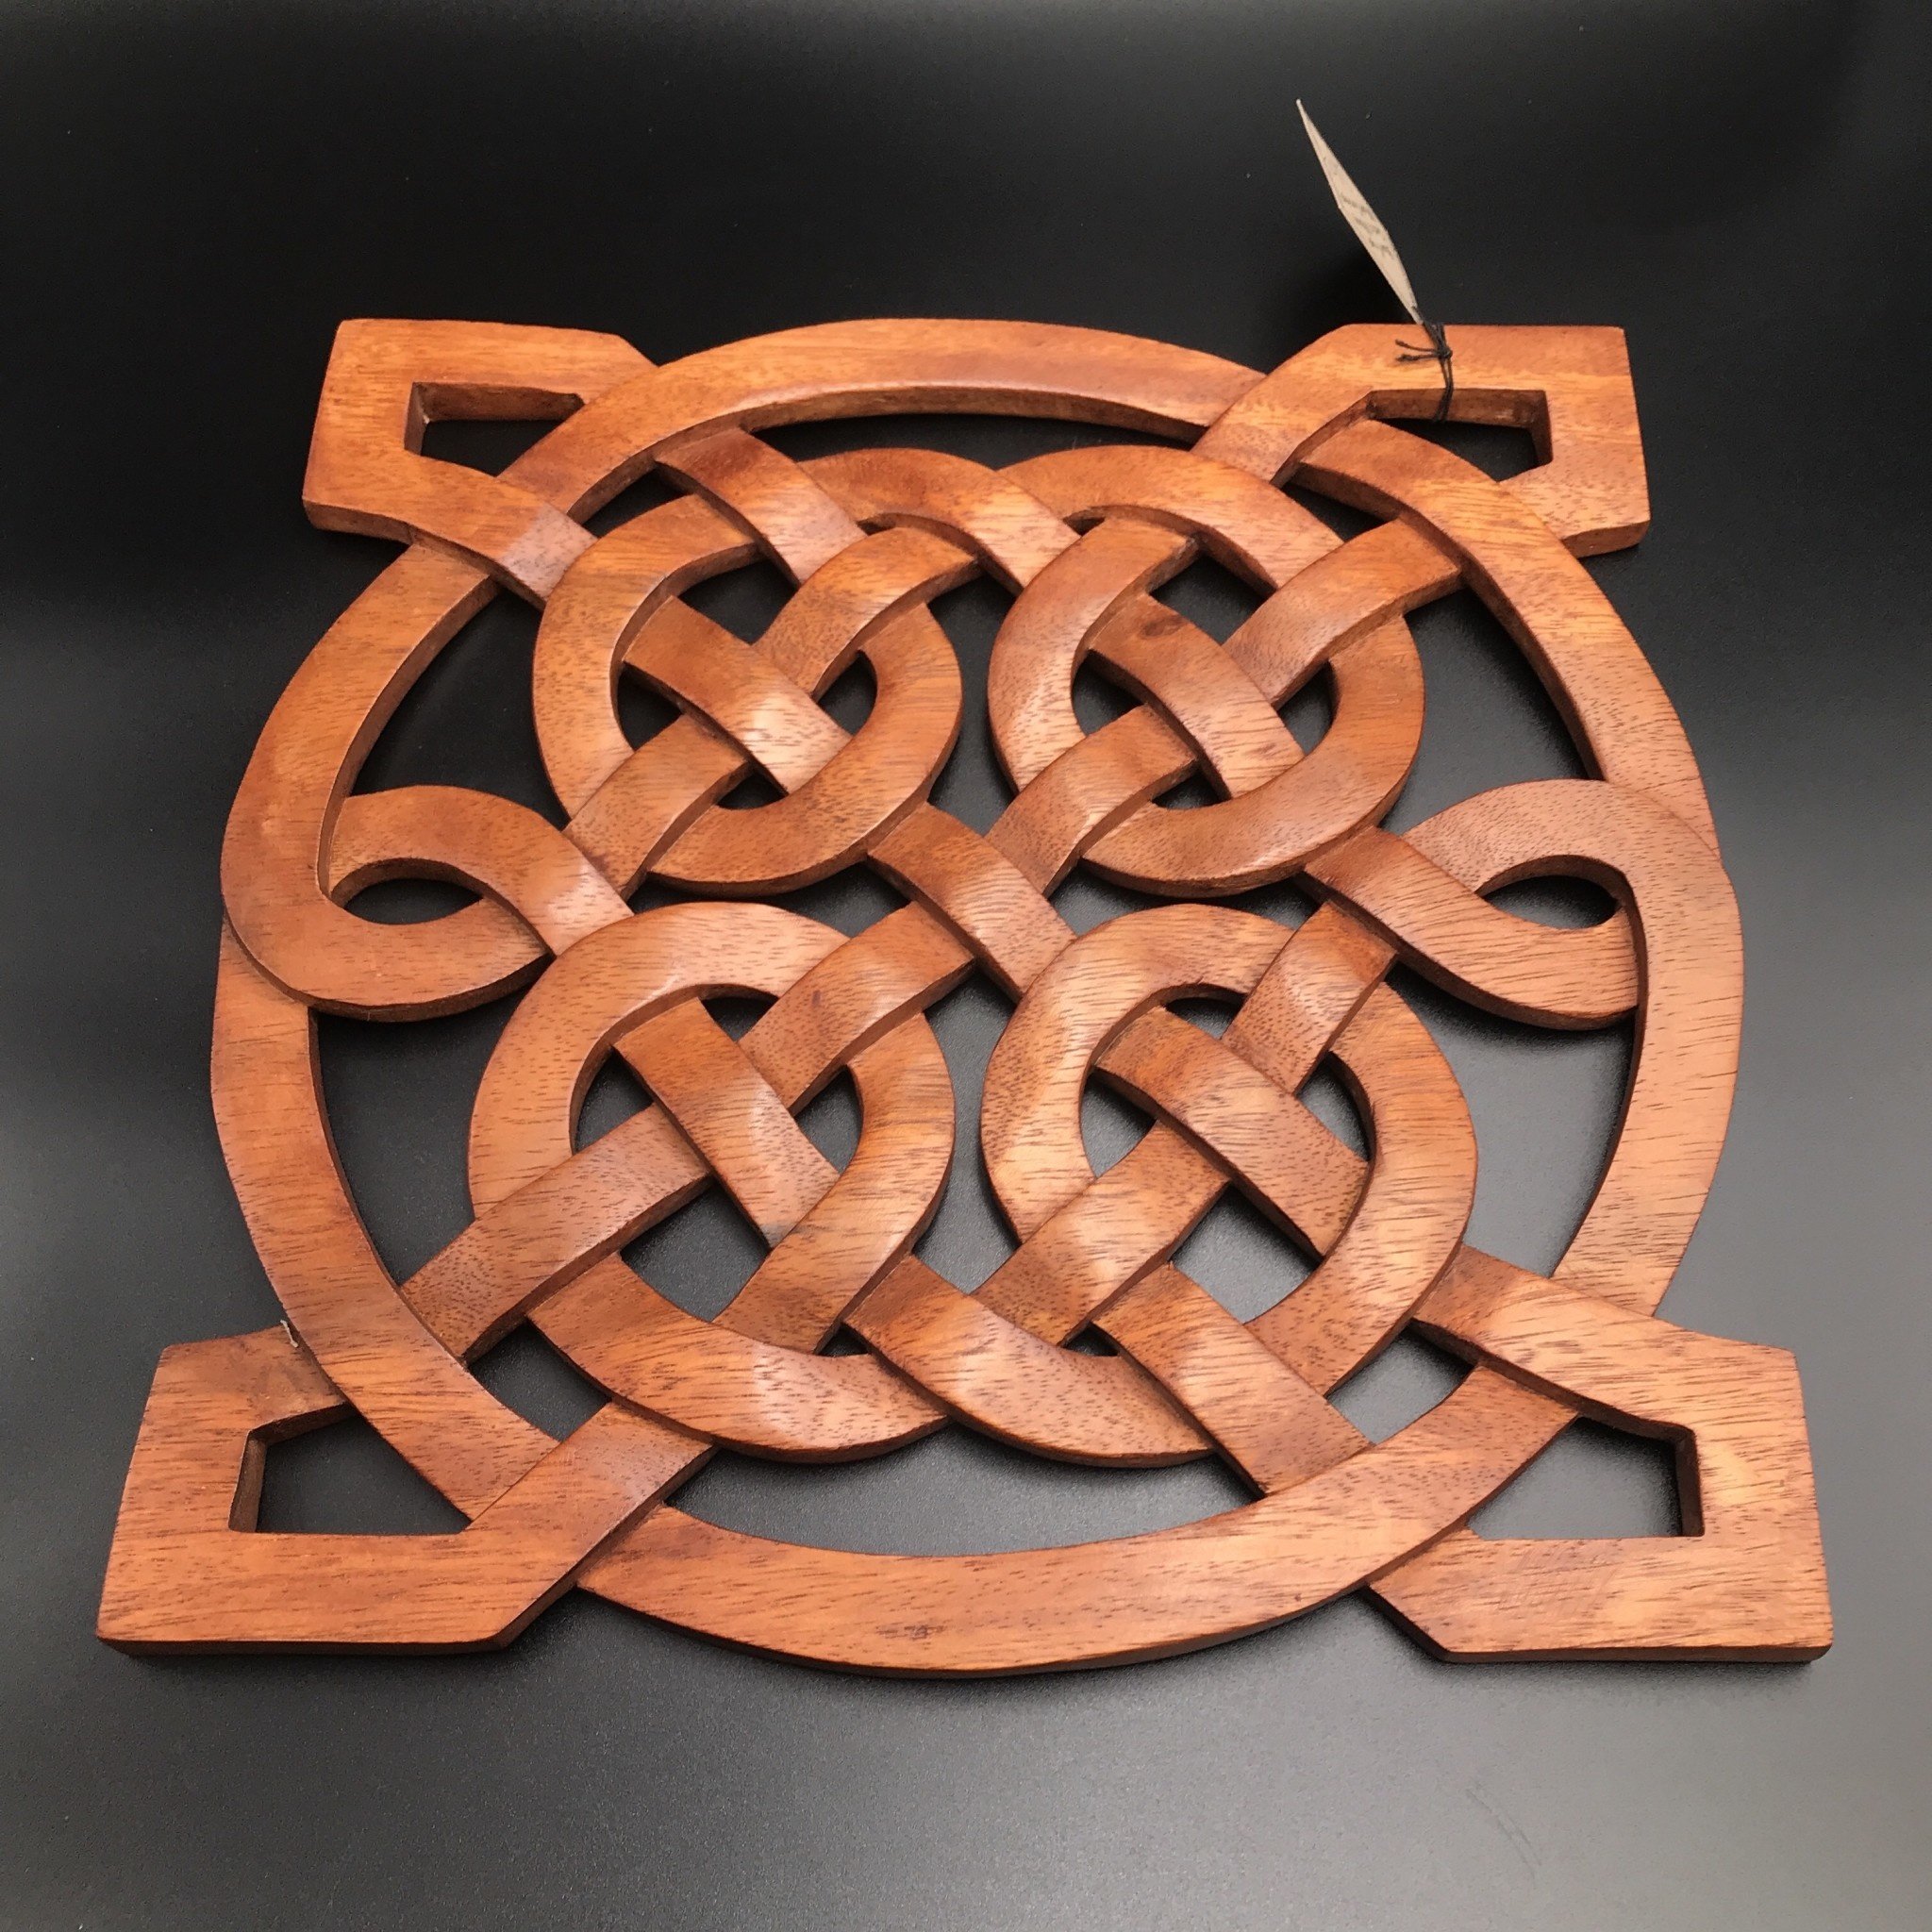 celtic knot square